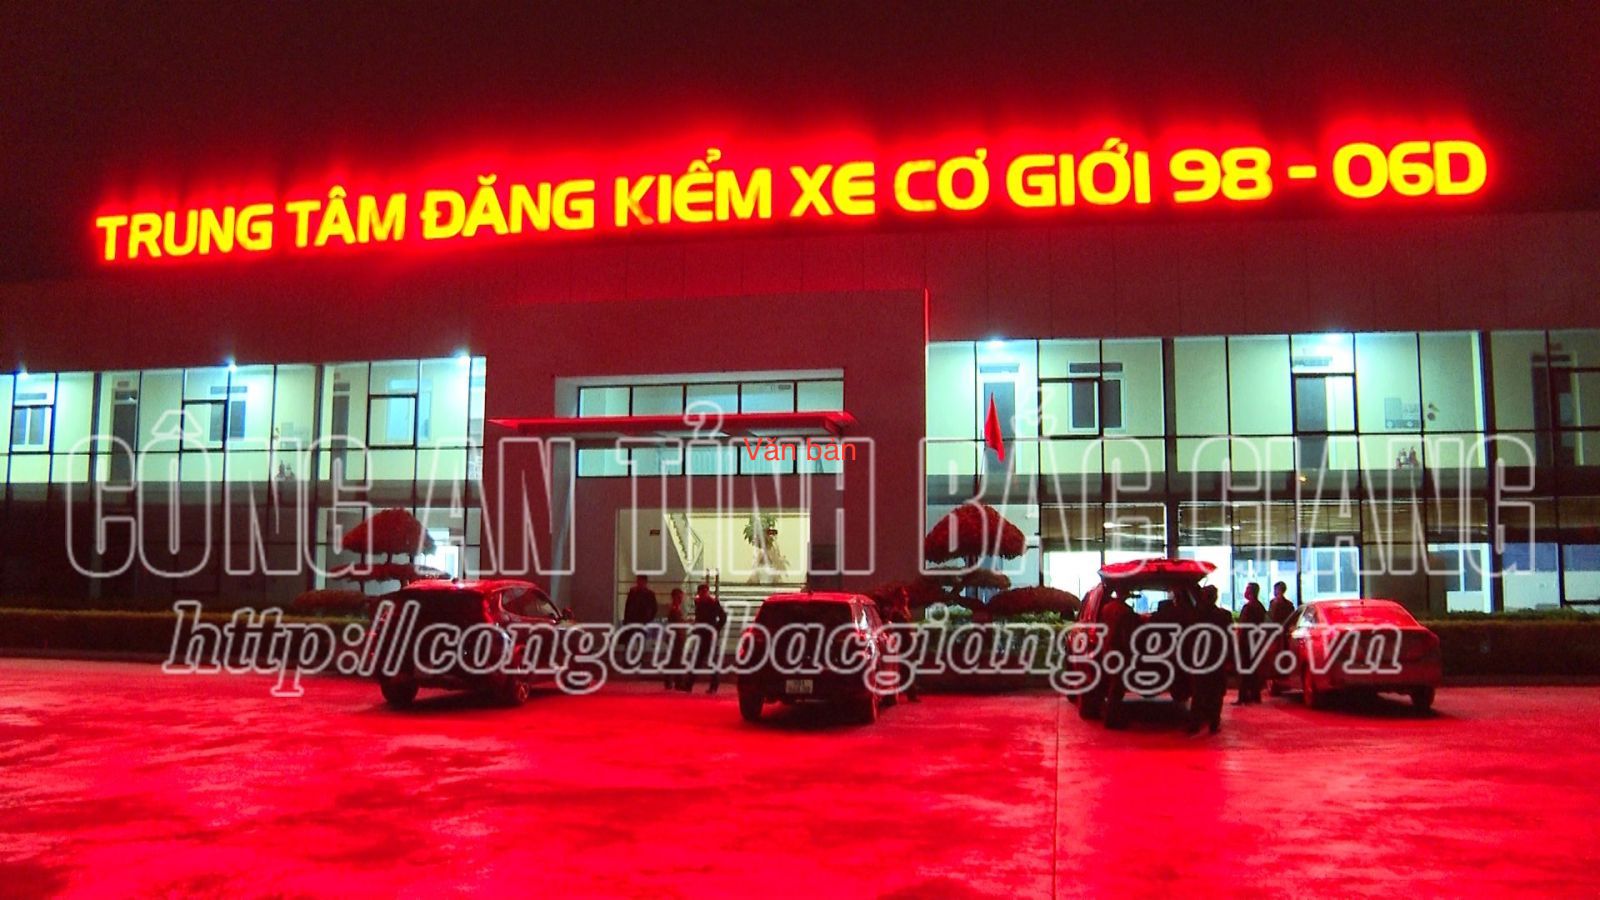 Bắt lãnh đạo một Trung tâm đăng kiểm xe cơ giới ở Bắc Giang - Ảnh 1.